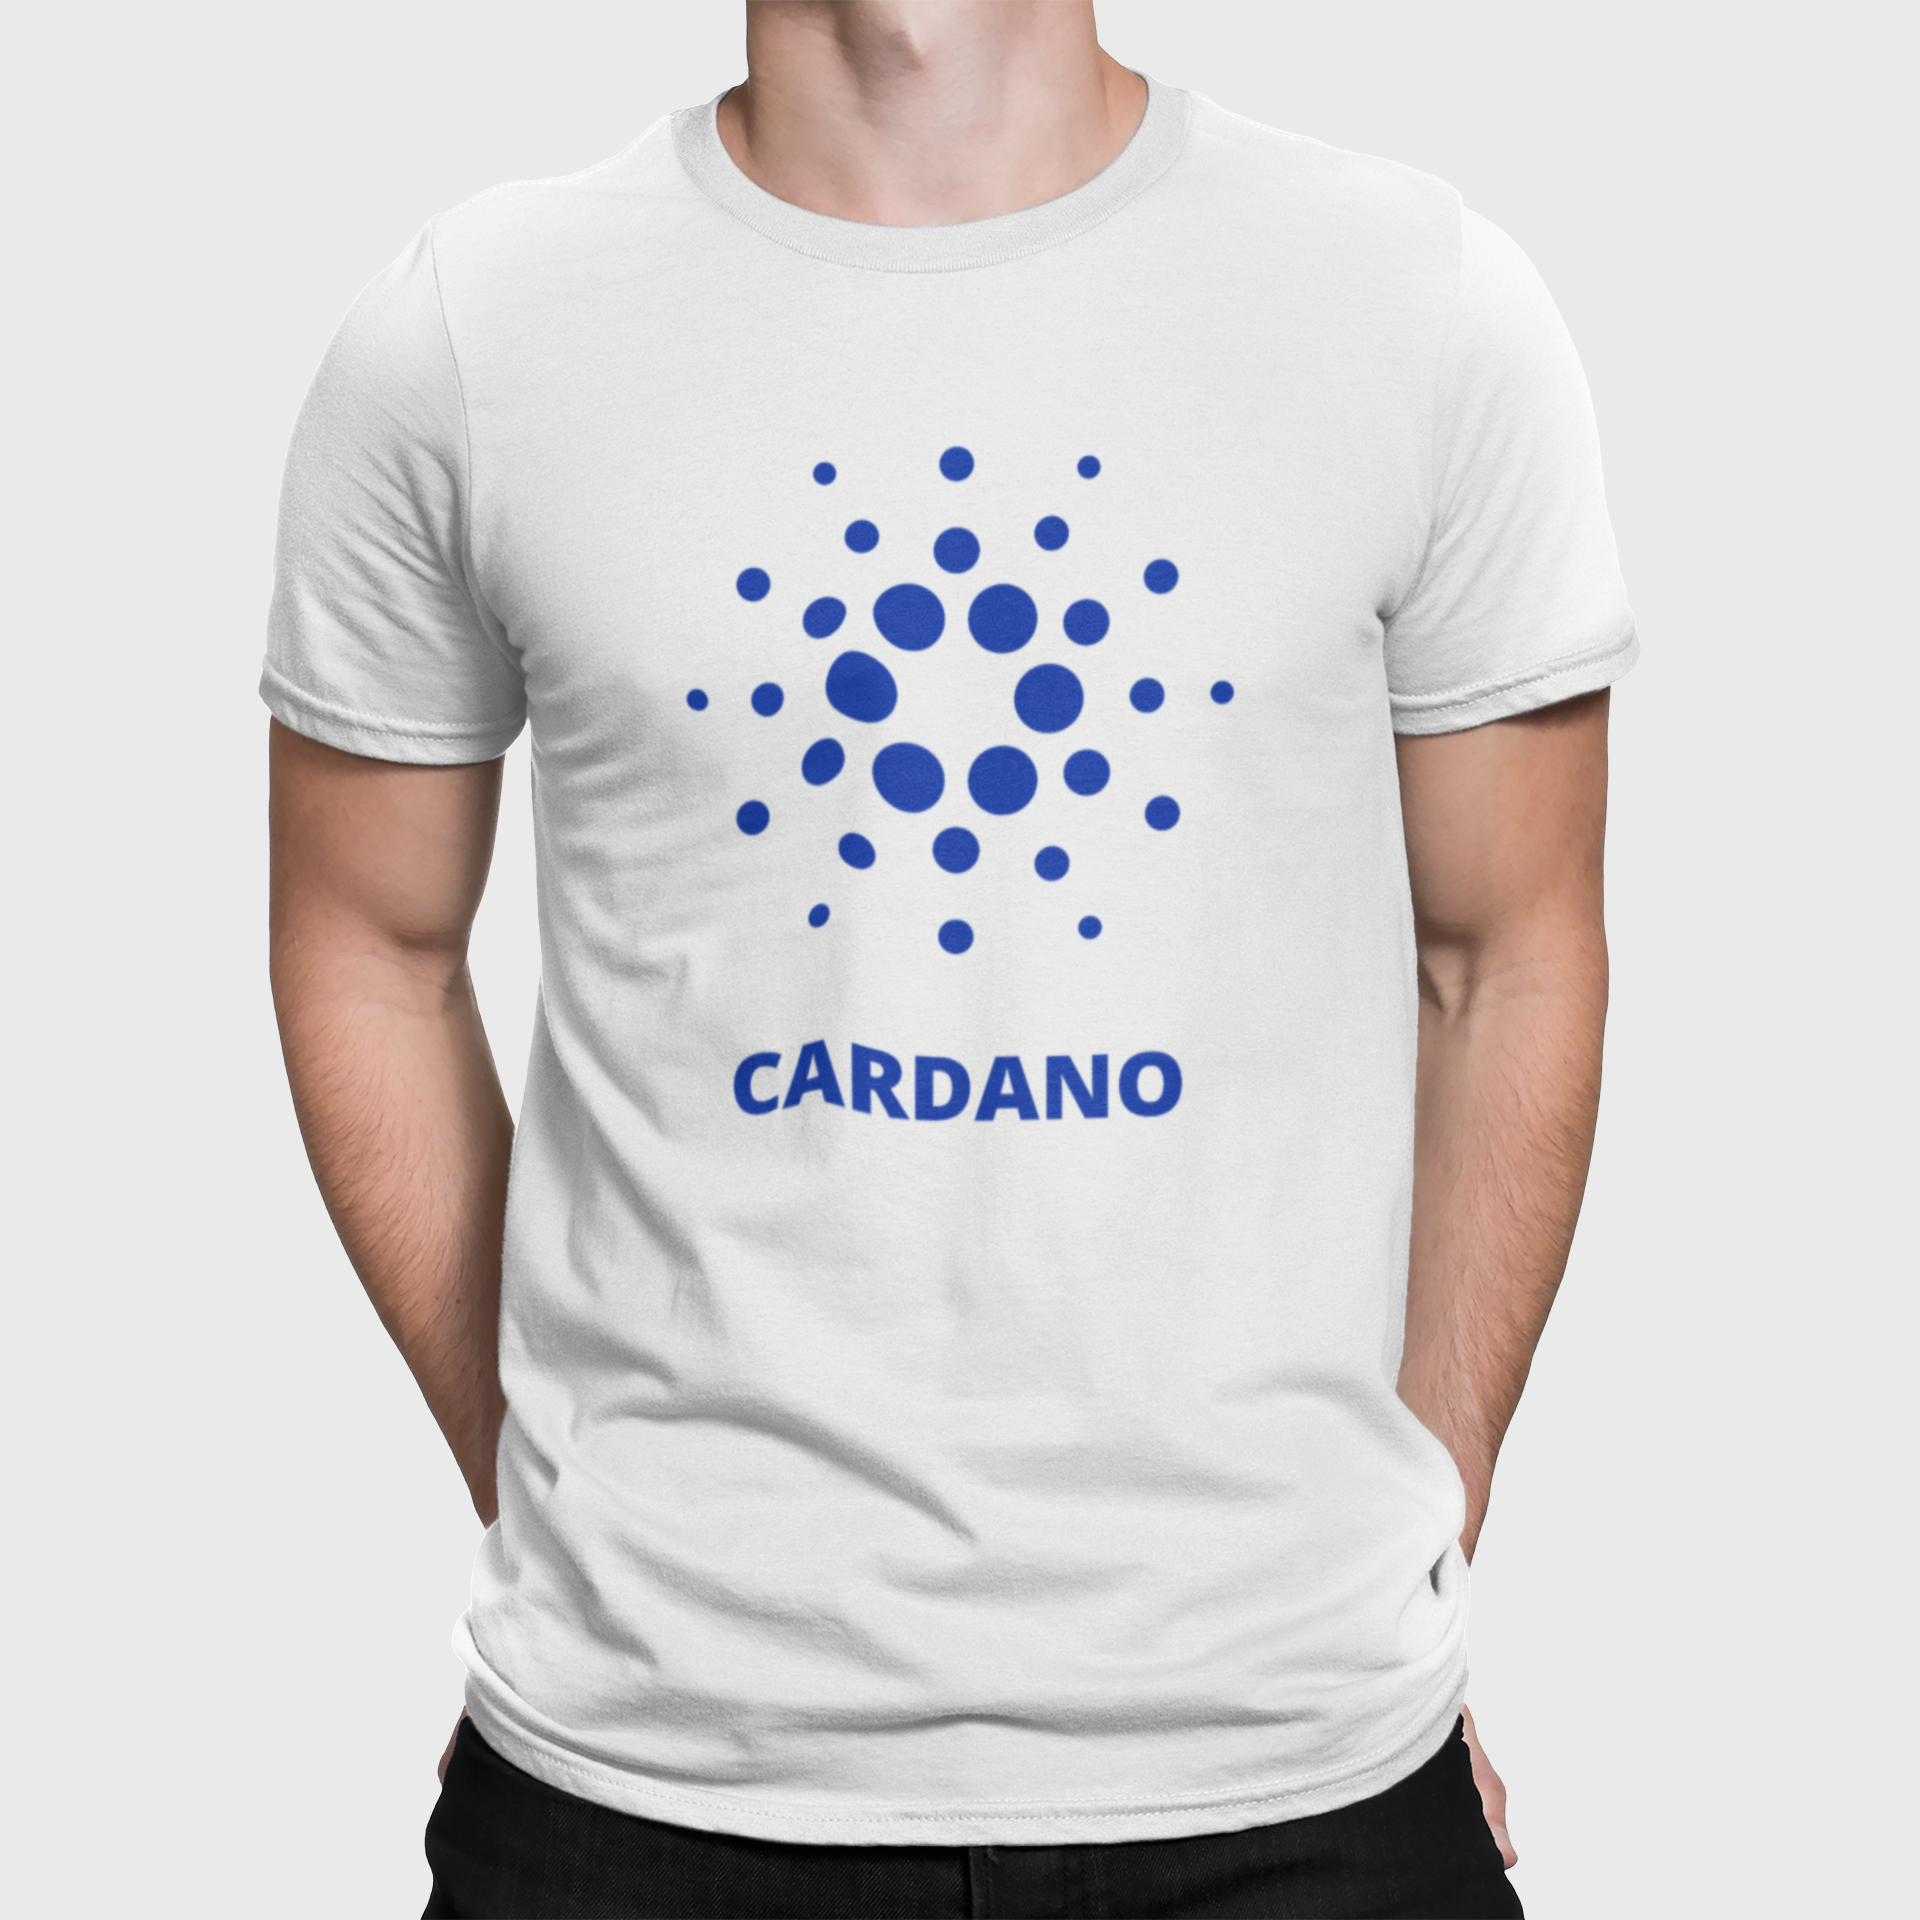 Cardano T Shirt For Men White